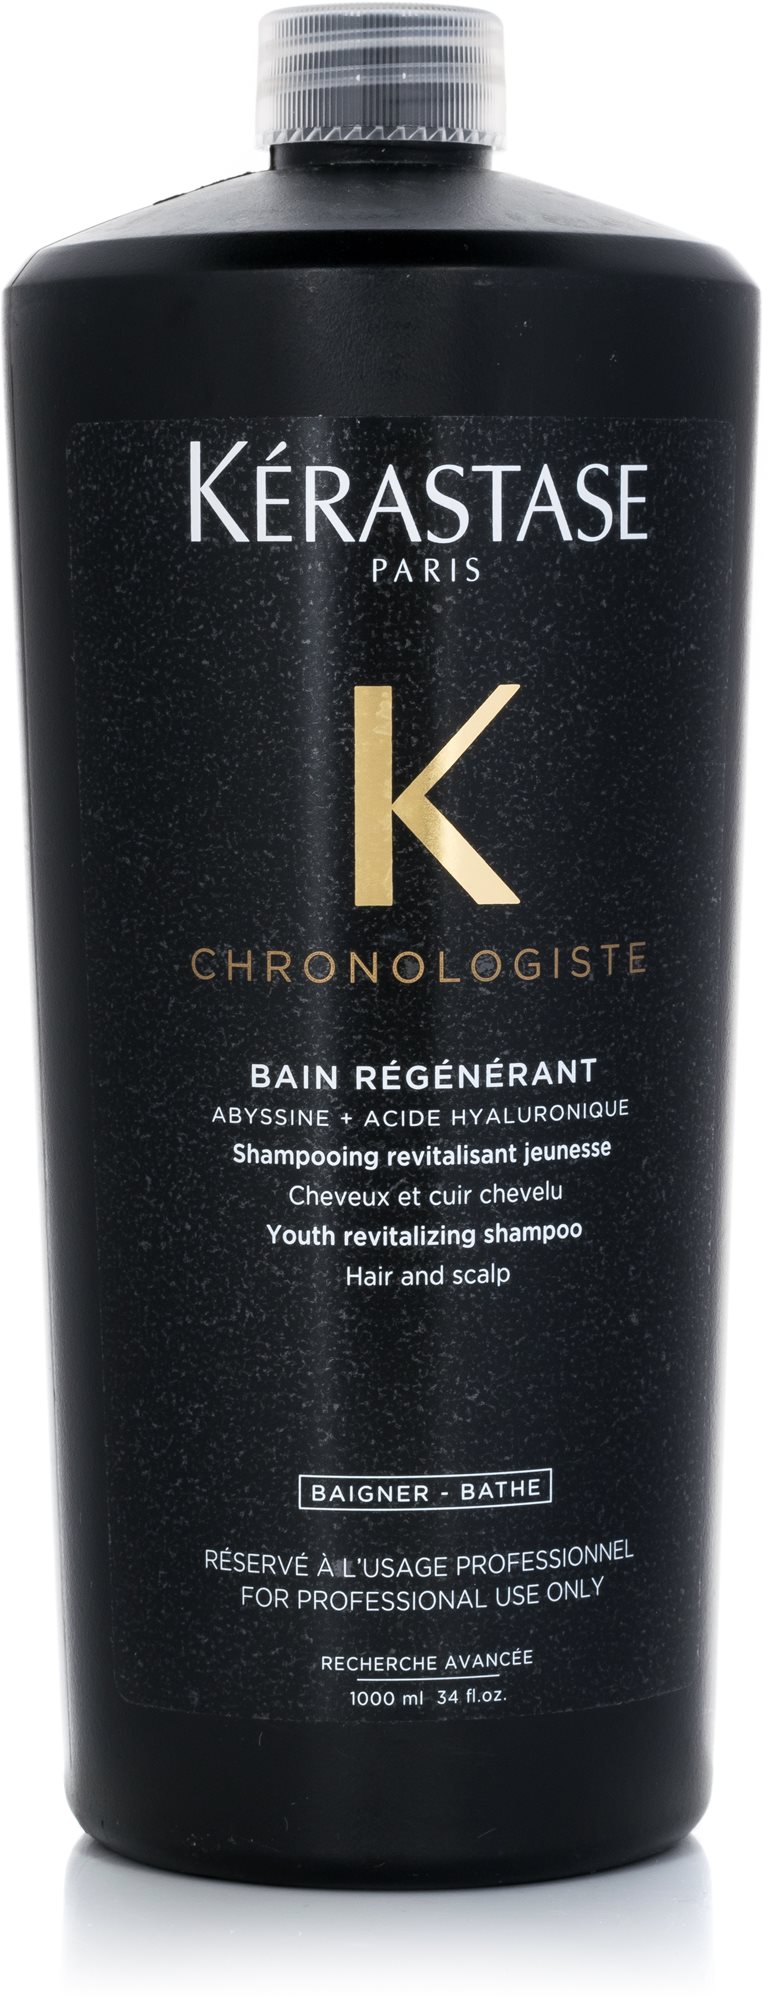 KÉRASTASE Chronologiste Bain Régénérant Shampoo 1000 ml